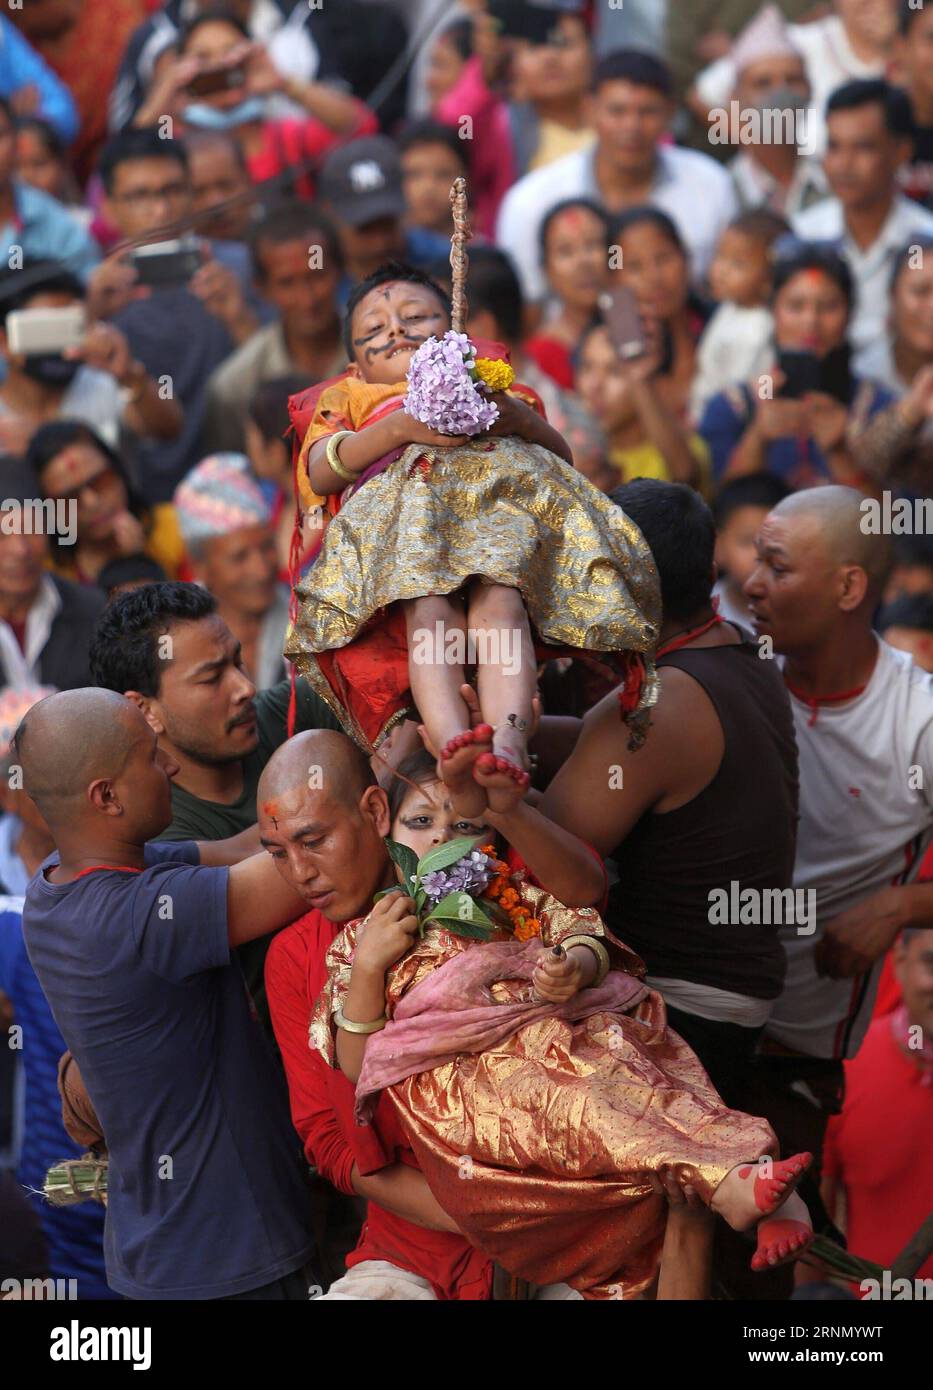 (170617) -- KATHMANDU, 17. Juni 2017 -- Ein Kind wird während des Tridents Festivals in Kathmandu, Nepal, am 17. Juni 2017 über einem hölzernen Zinken balanciert, der in einem Wagen von Priestern und Gläubigen gepflanzt wurde. Das Tridents Festival wird von Hindus gefeiert, die glauben, dass ihre Kinder nach der Teilnahme an diesem Ritual von guter Gesundheit gesegnet werden. ) (lrz) NEPAL-KATHMANDU-TRIDENT FESTIVAL SunilxSharma PUBLICATIONxNOTxINxCHN KATHMANDU 17. Juni 2017 ein Kind WIRD über einem hölzernen Prong balanciert, der von Priestern und Gläubigen während des Tridents Festivals in Kathmandu Nepal AM 17. Juni 2017 The Tride in einem Kariot gepflanzt WURDE Stockfoto